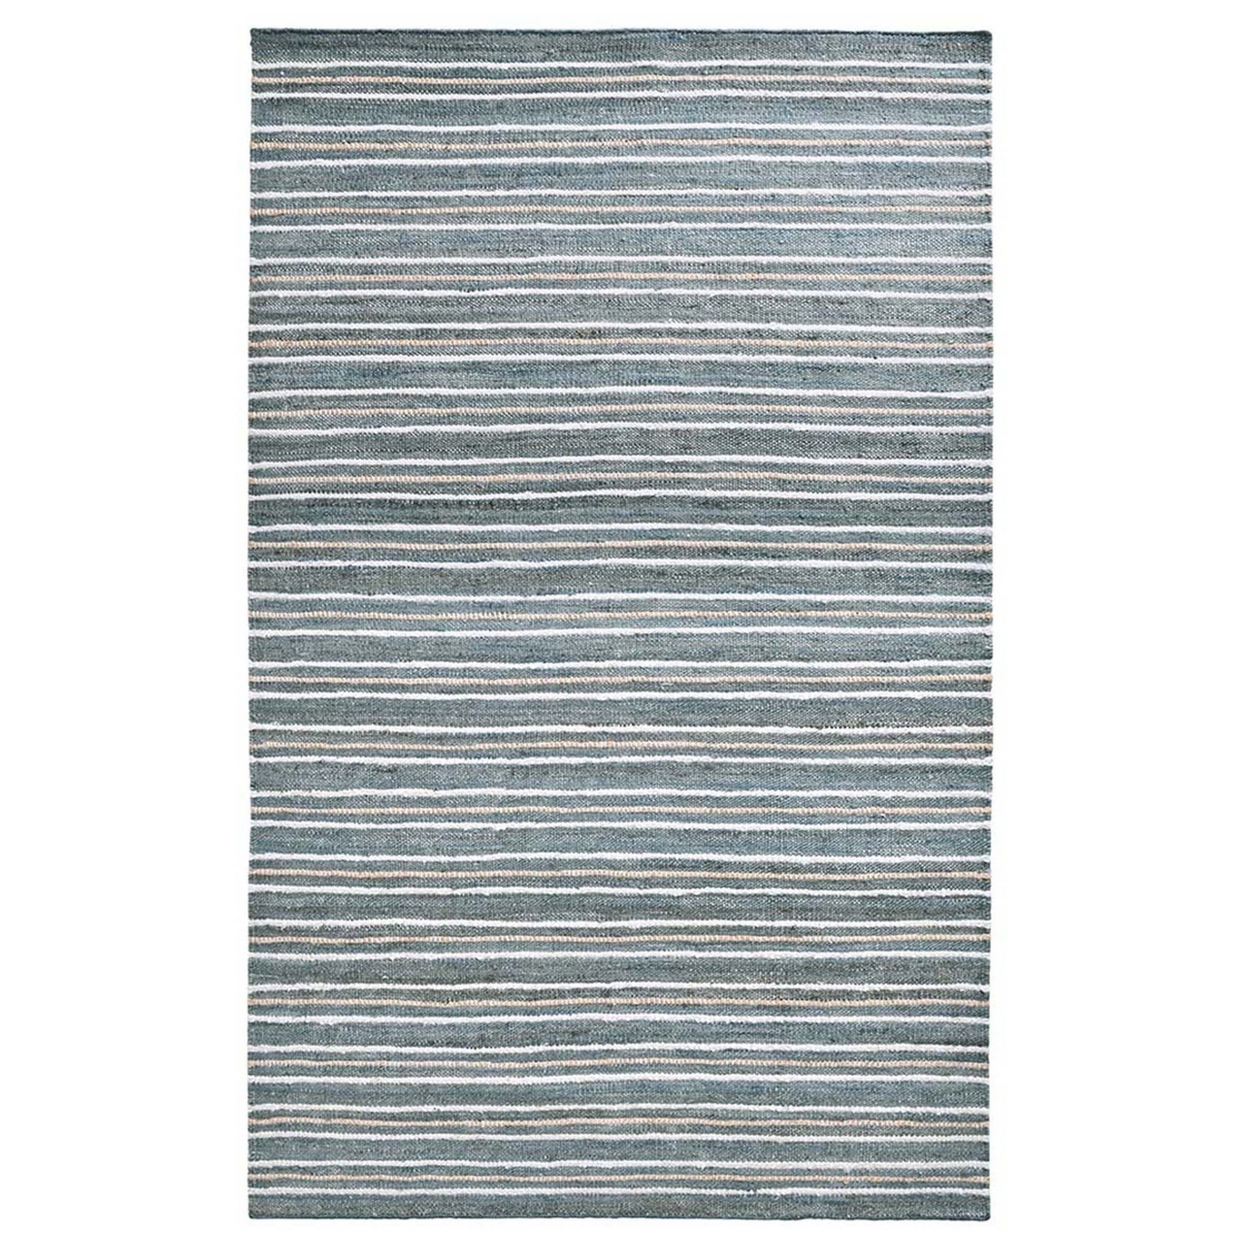 Azu 5 X 8 Handmade Medium Area Rug, Classic Stripes, Aqua Blue, Multicolor- Saltoro Sherpi